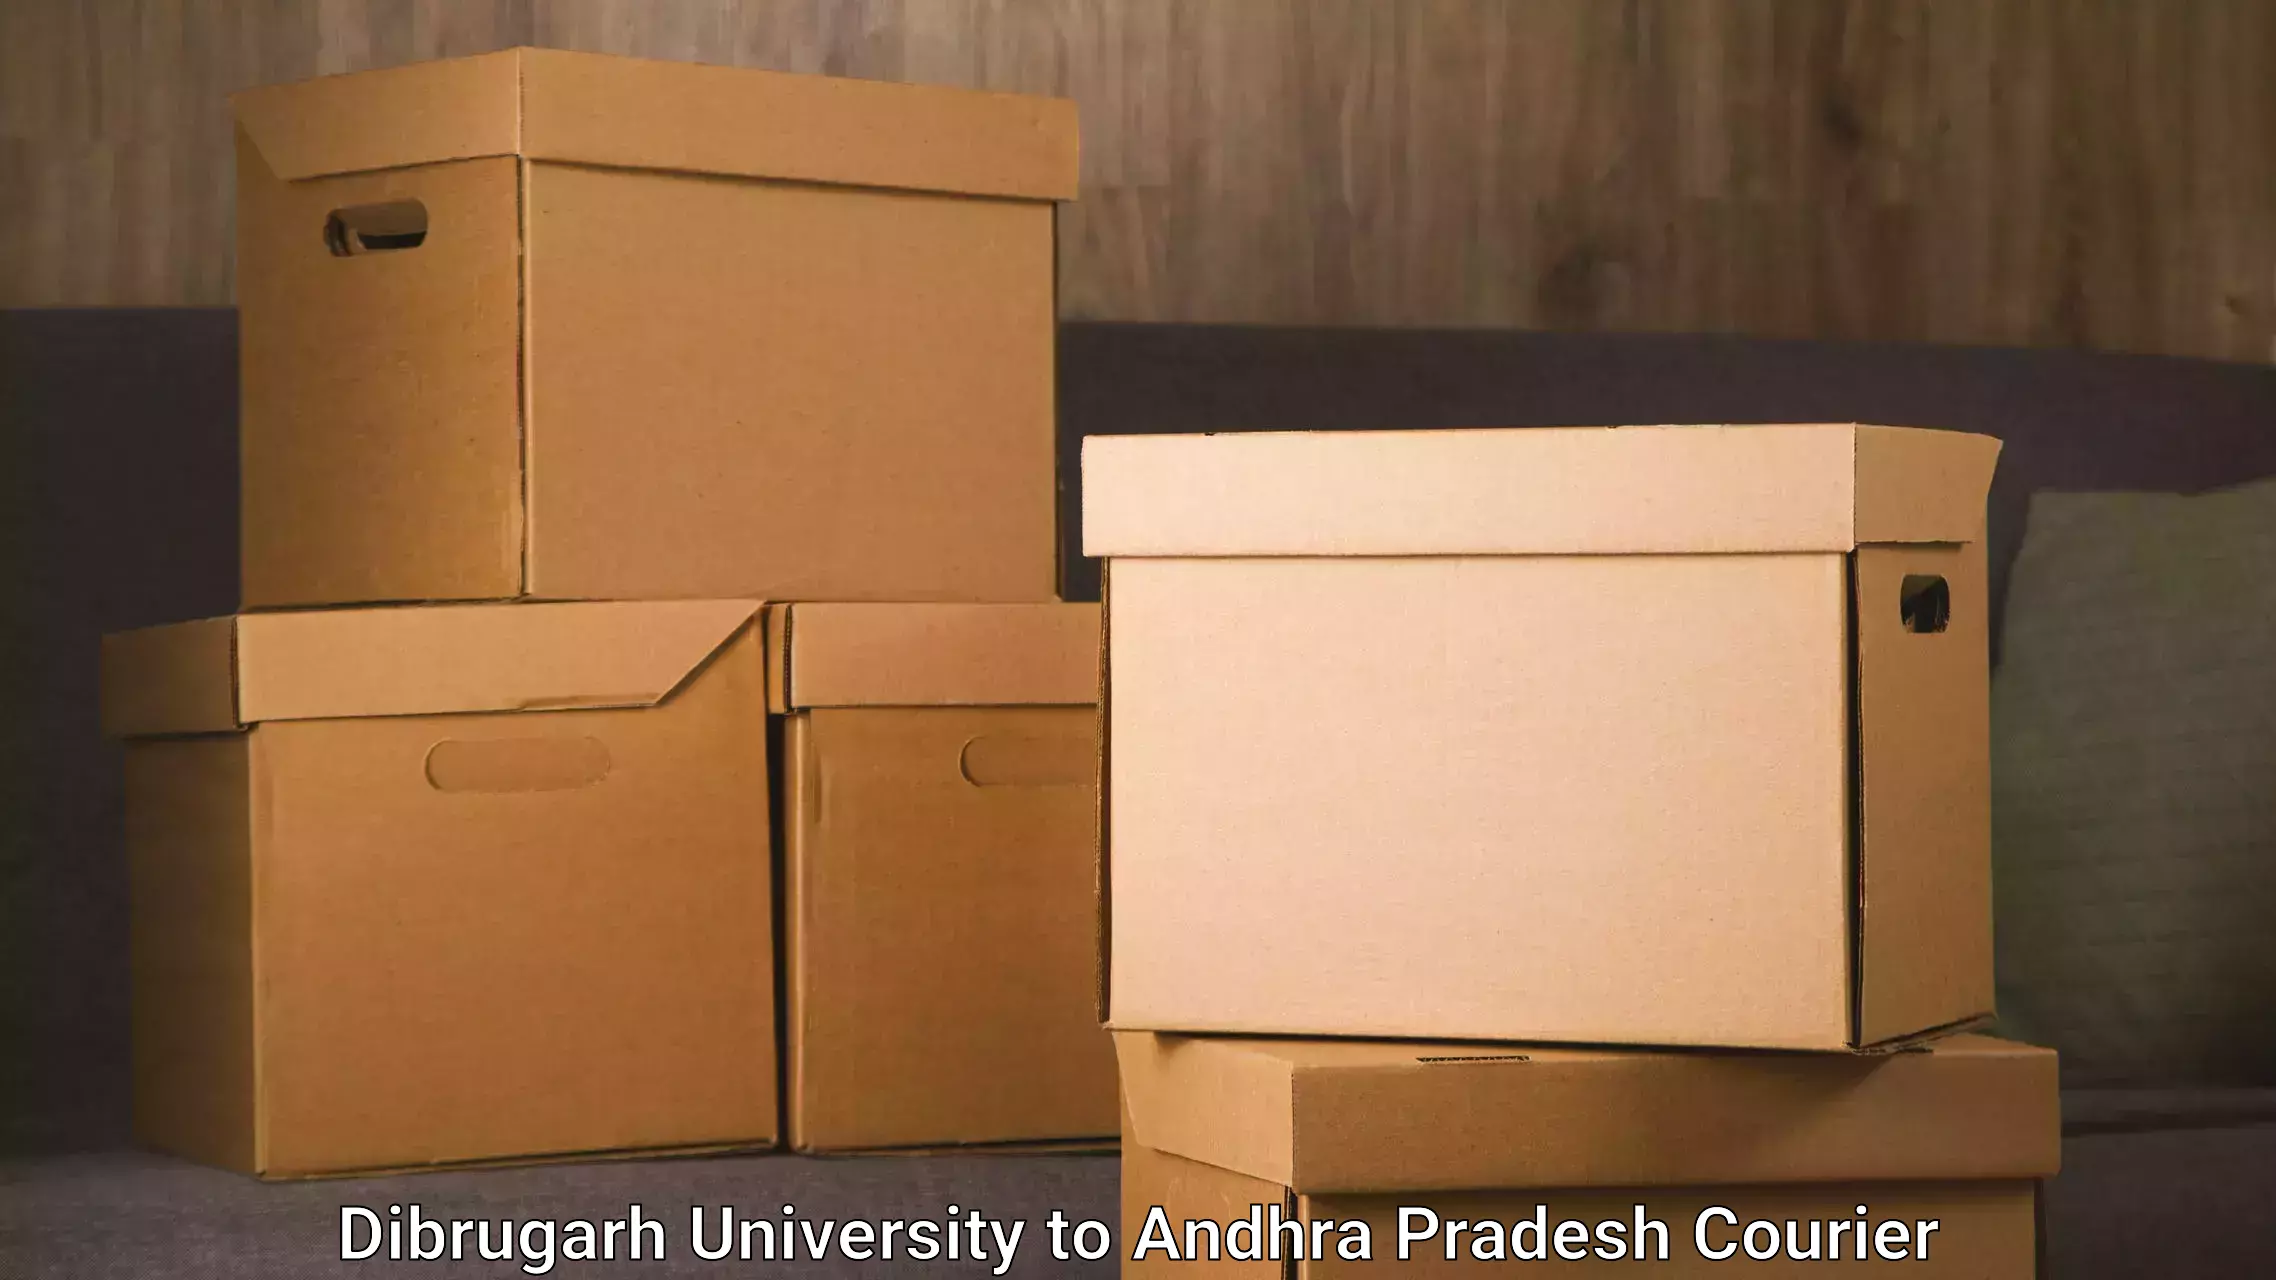 Local delivery service Dibrugarh University to Tirupati